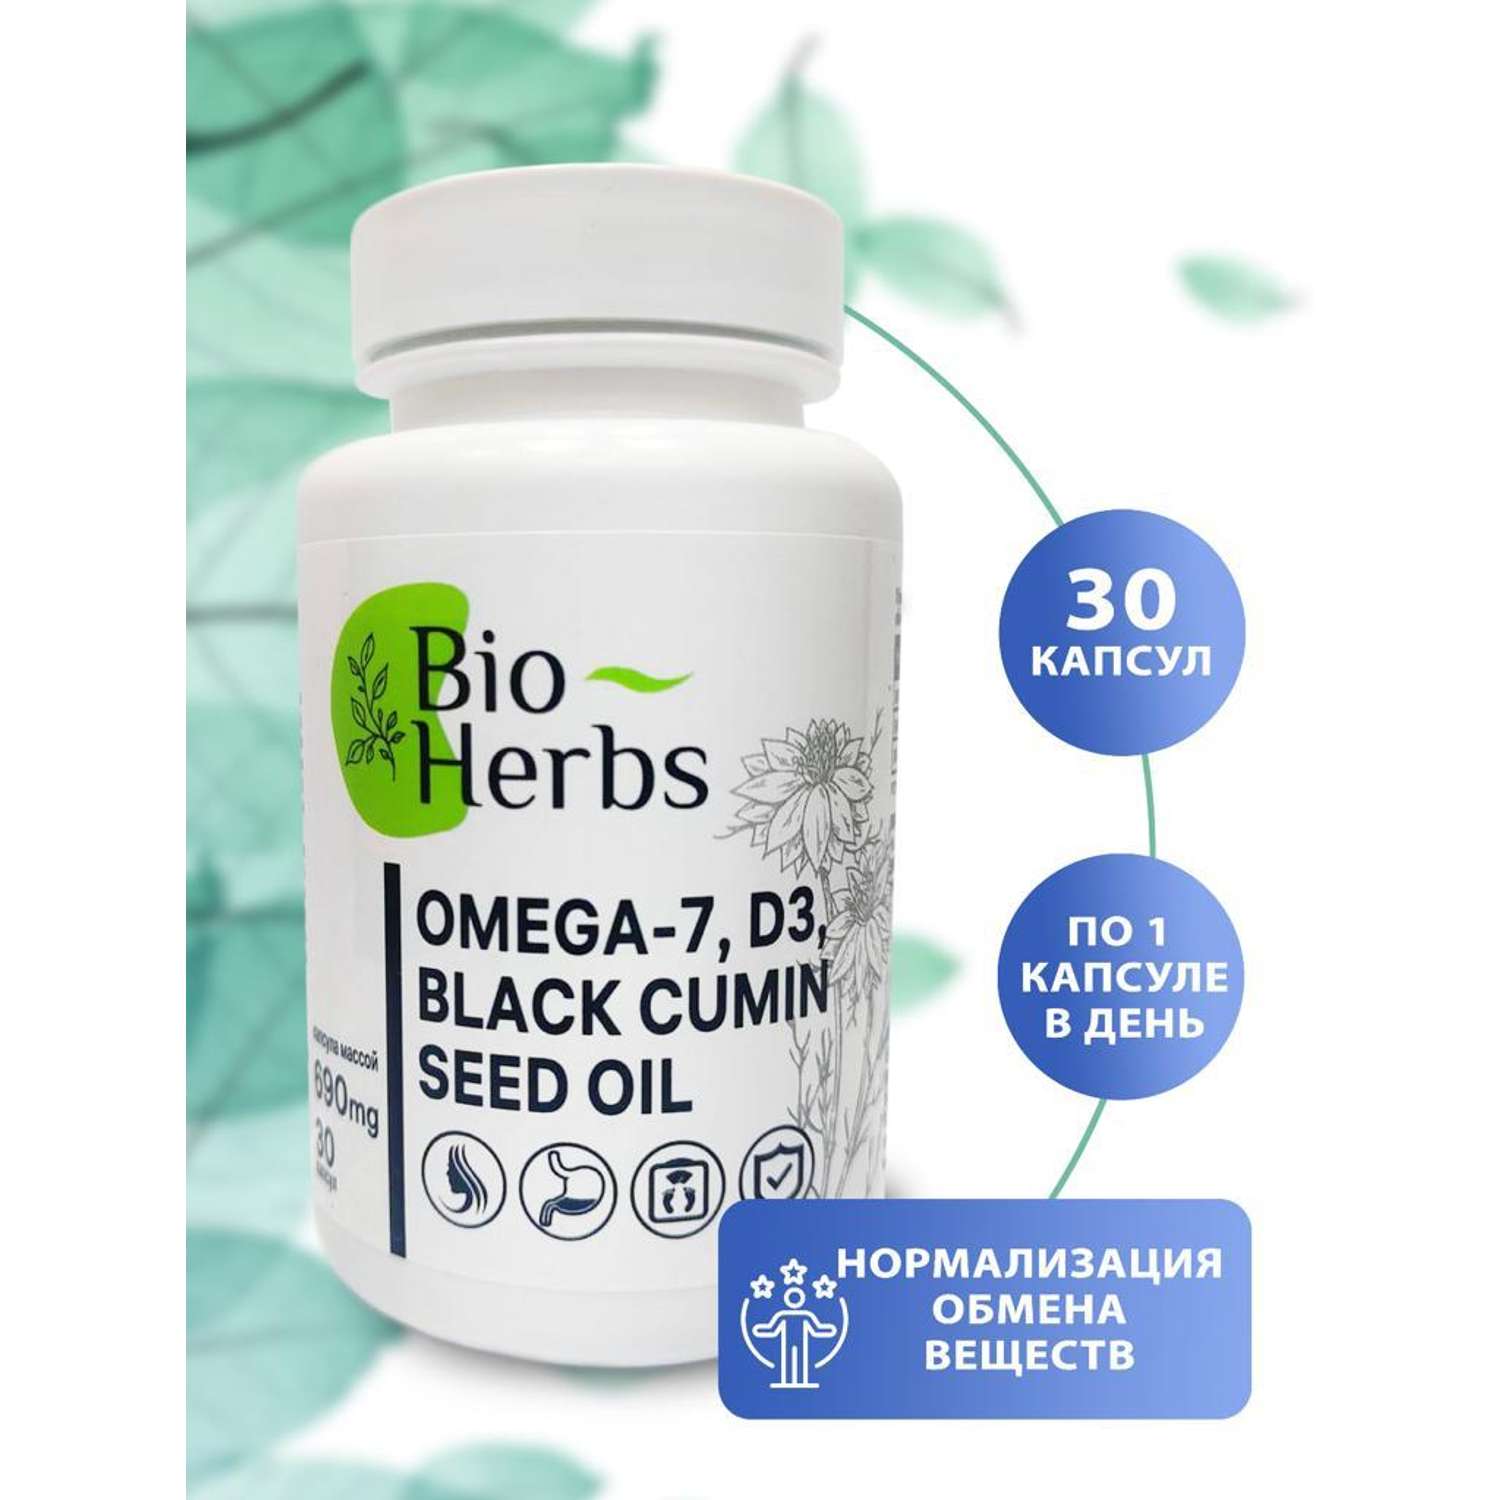 Омега 7 и масло черного тмина Bio Herbs для похудения и улучшения обмена веществ - фото 2